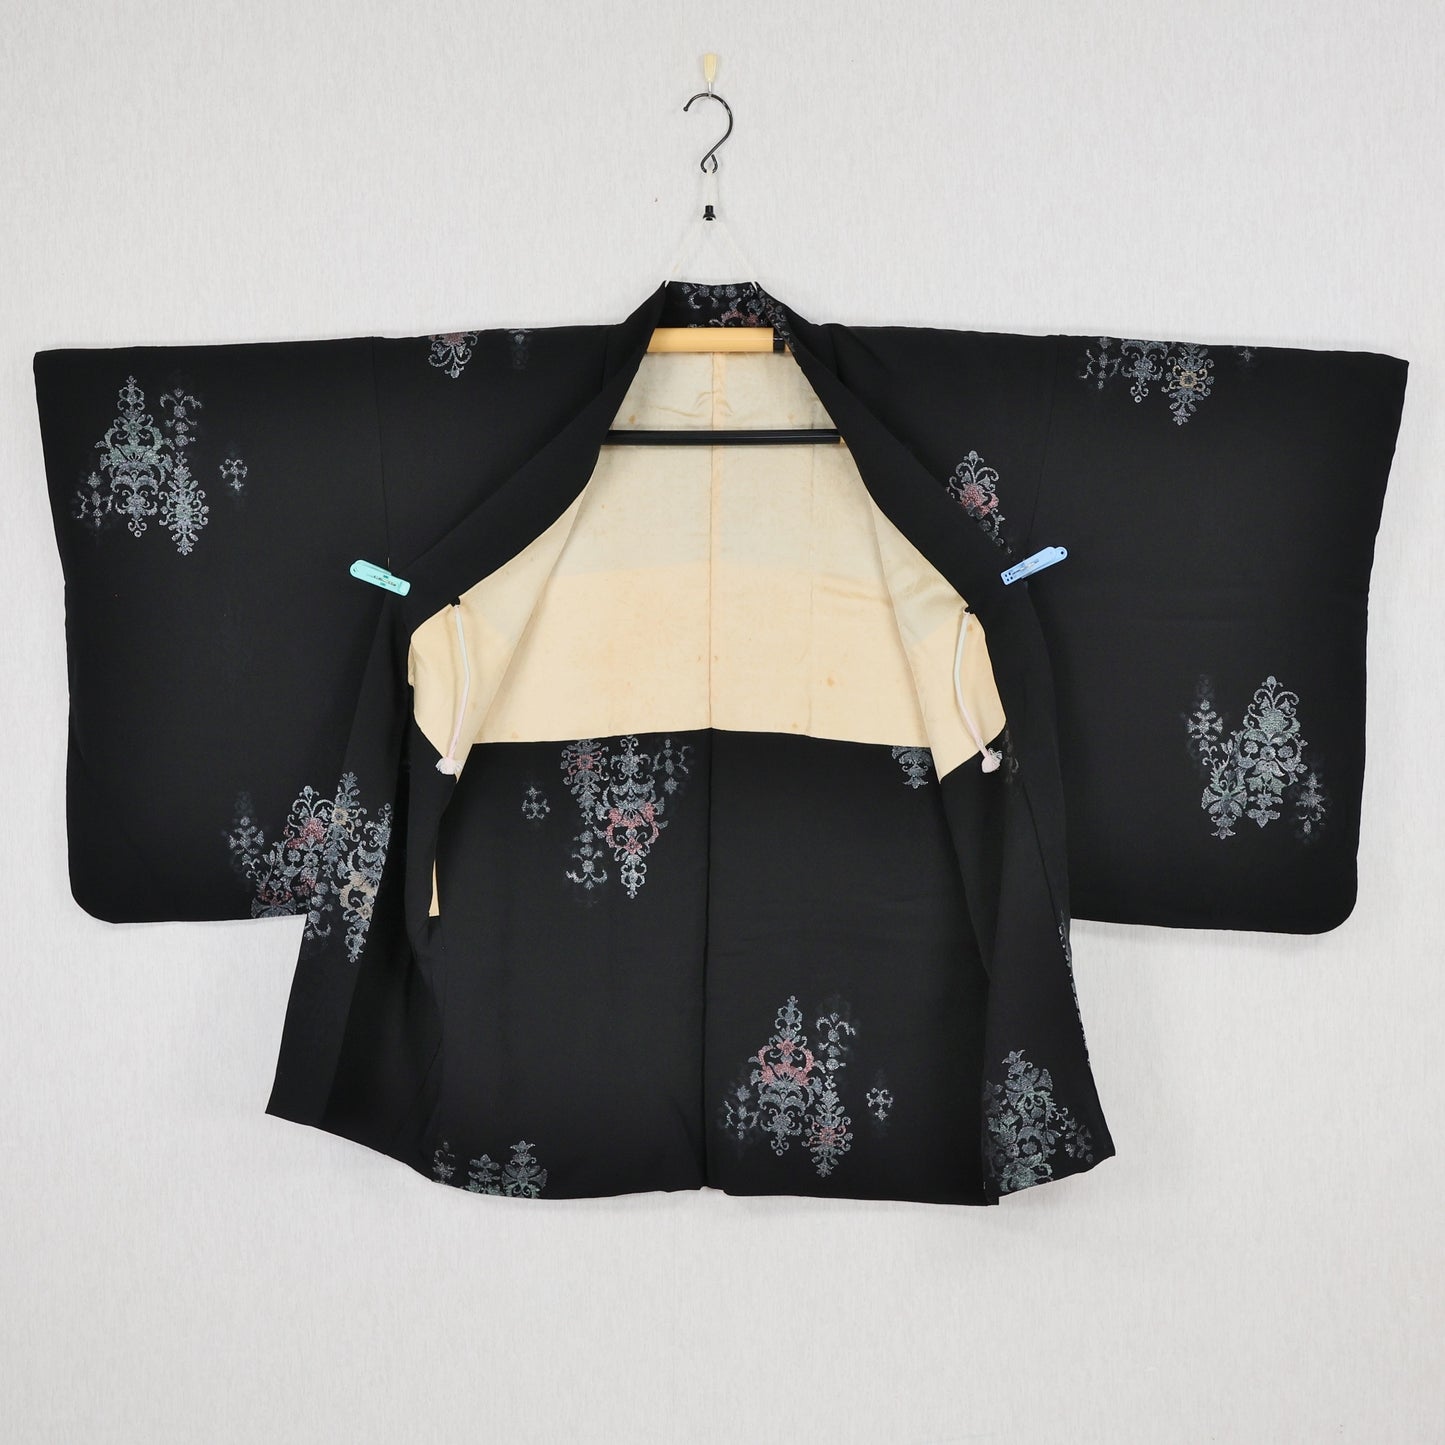 Haori kimono, Black Haori, Japanese Haori Kimono, Black Kimono Haori, Japanese Haori, Vintage Haori kimono, Japanese haori kimono, Haori for women, Free shipping